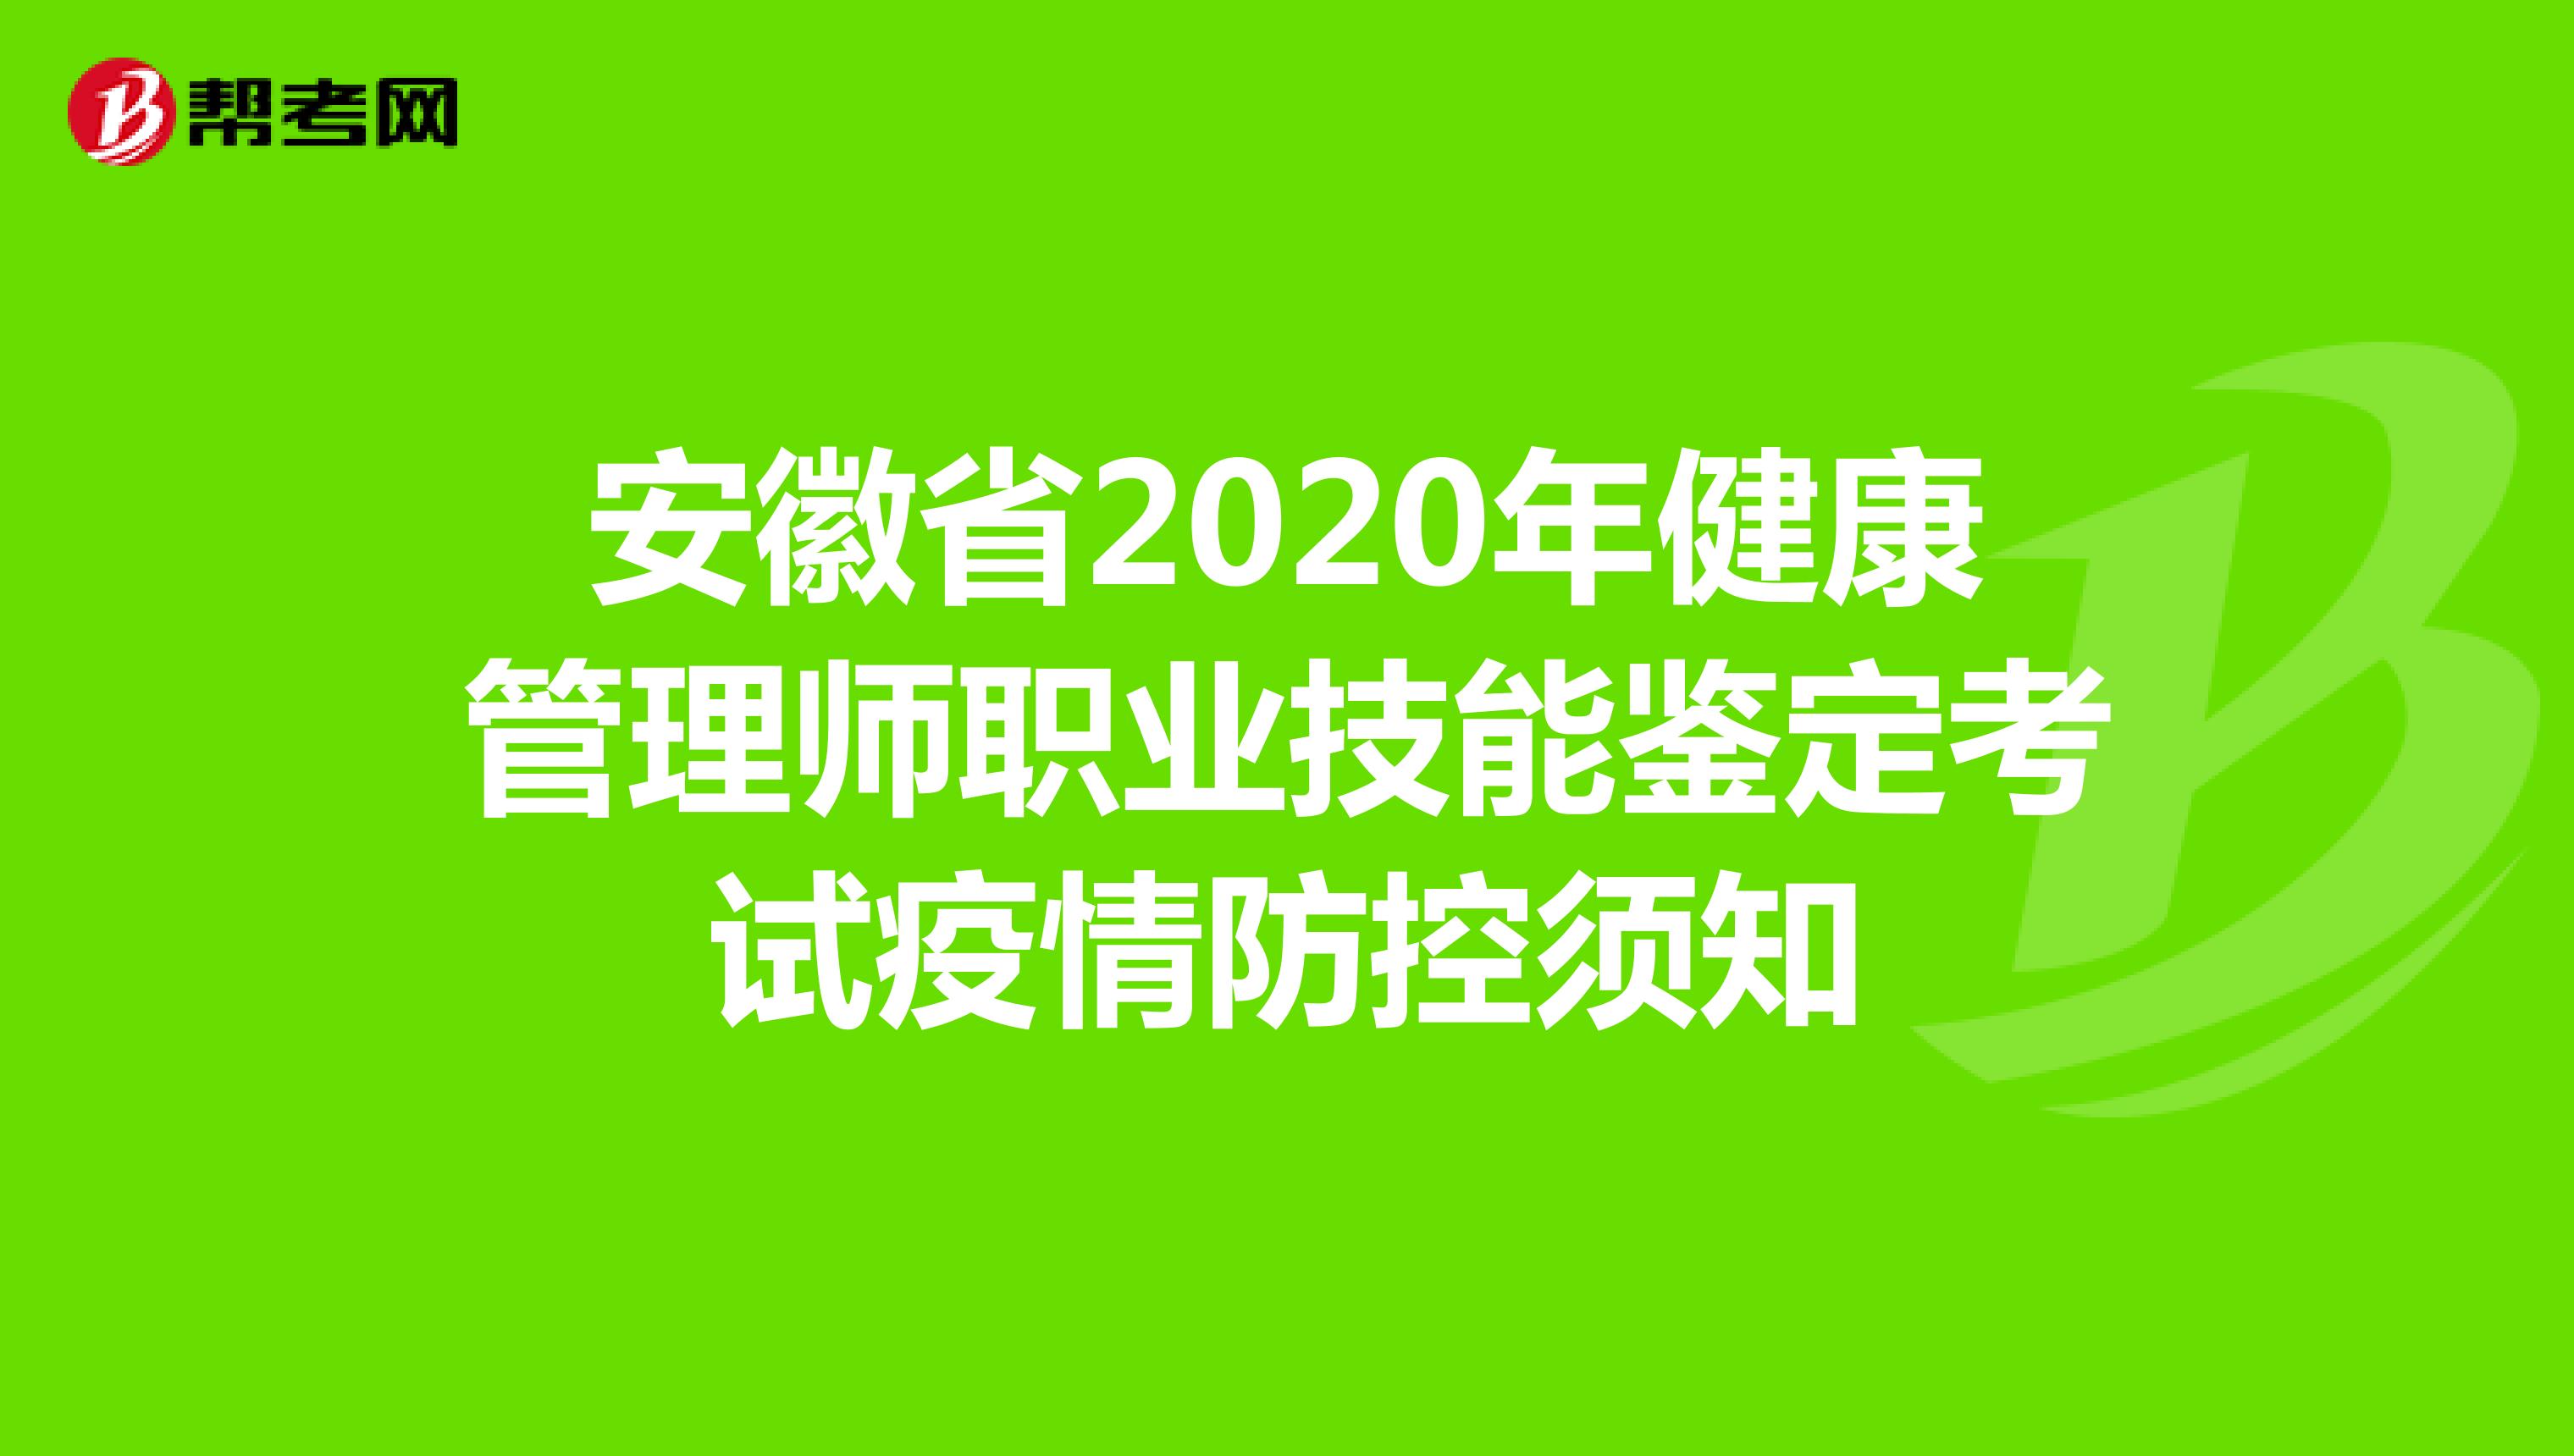 安徽省2020年健康管理师职业技能鉴定考试疫情防控须知